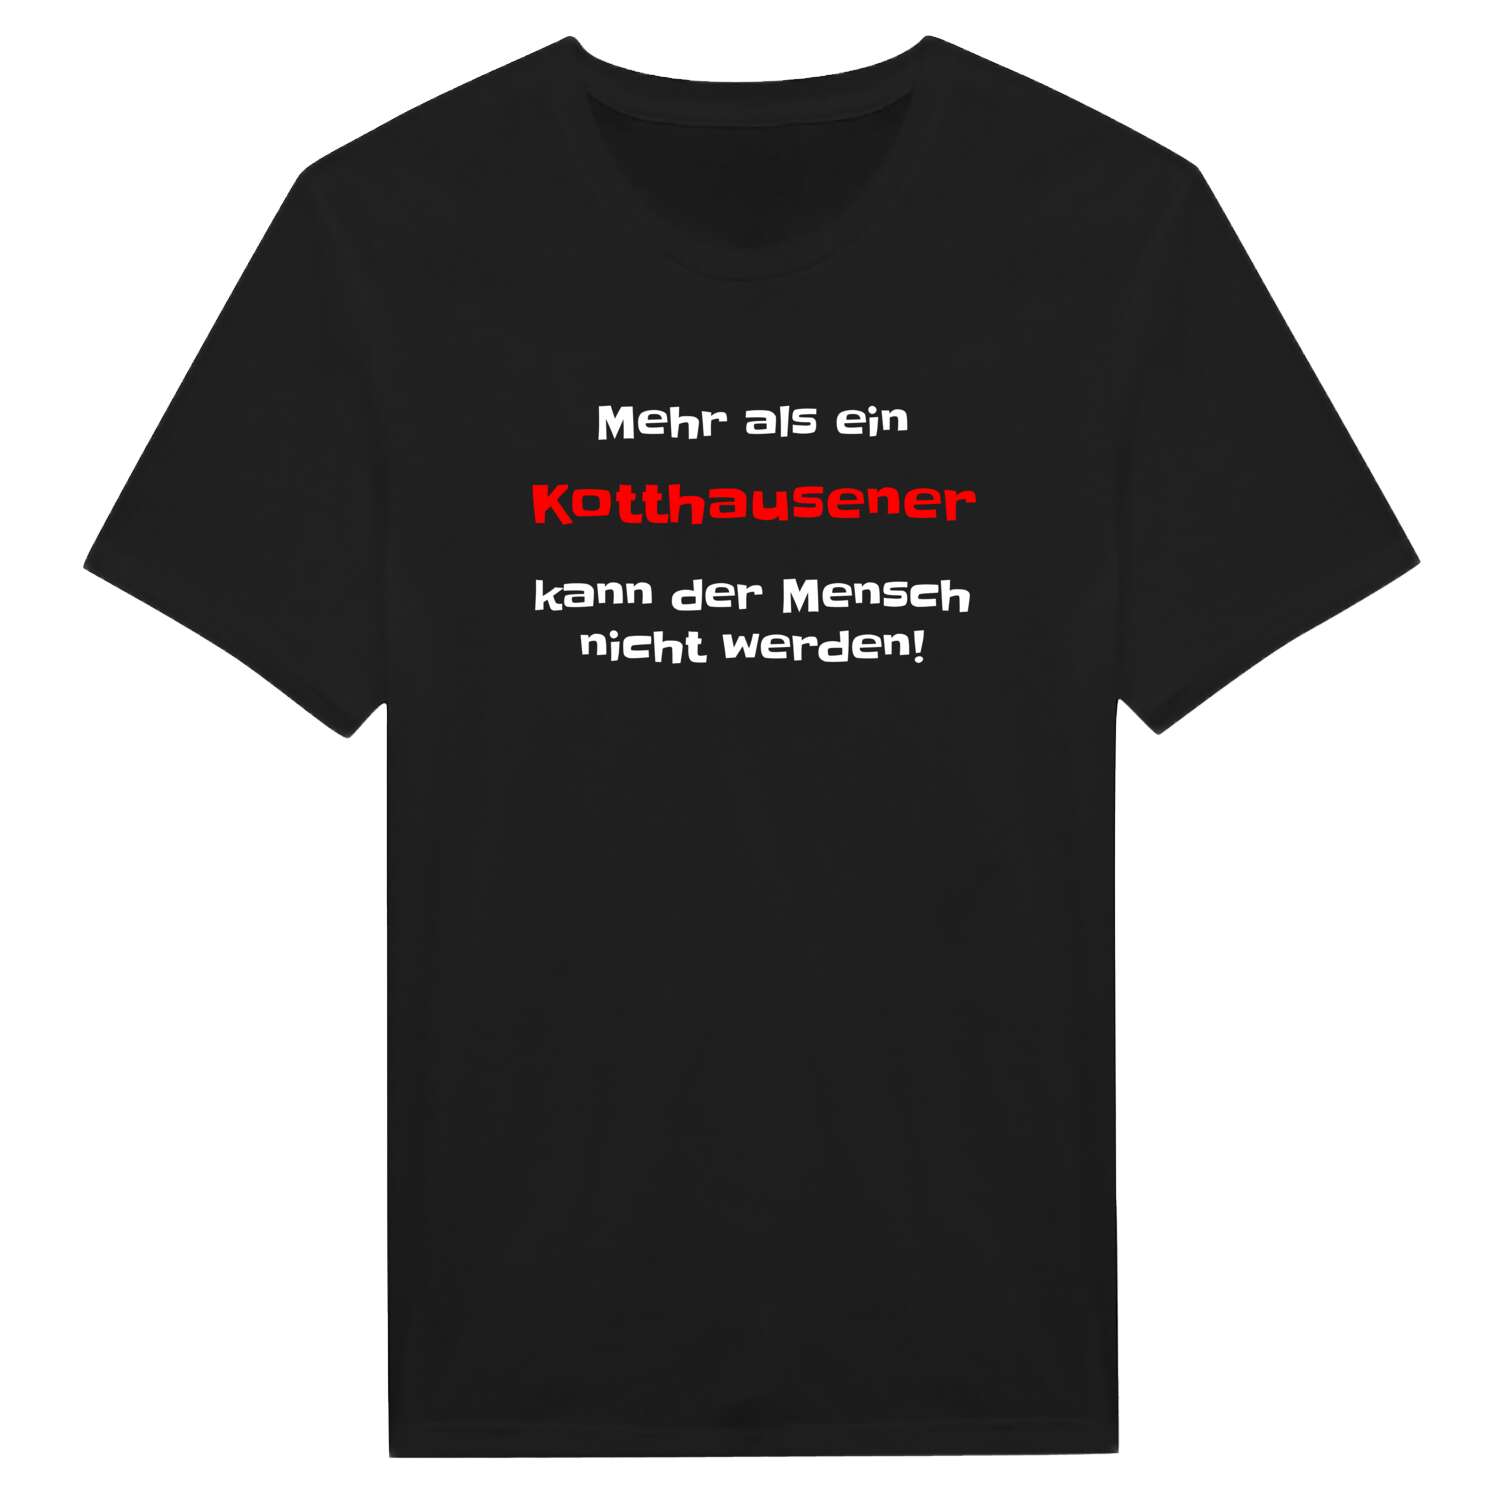 Kotthausen T-Shirt »Mehr als ein«